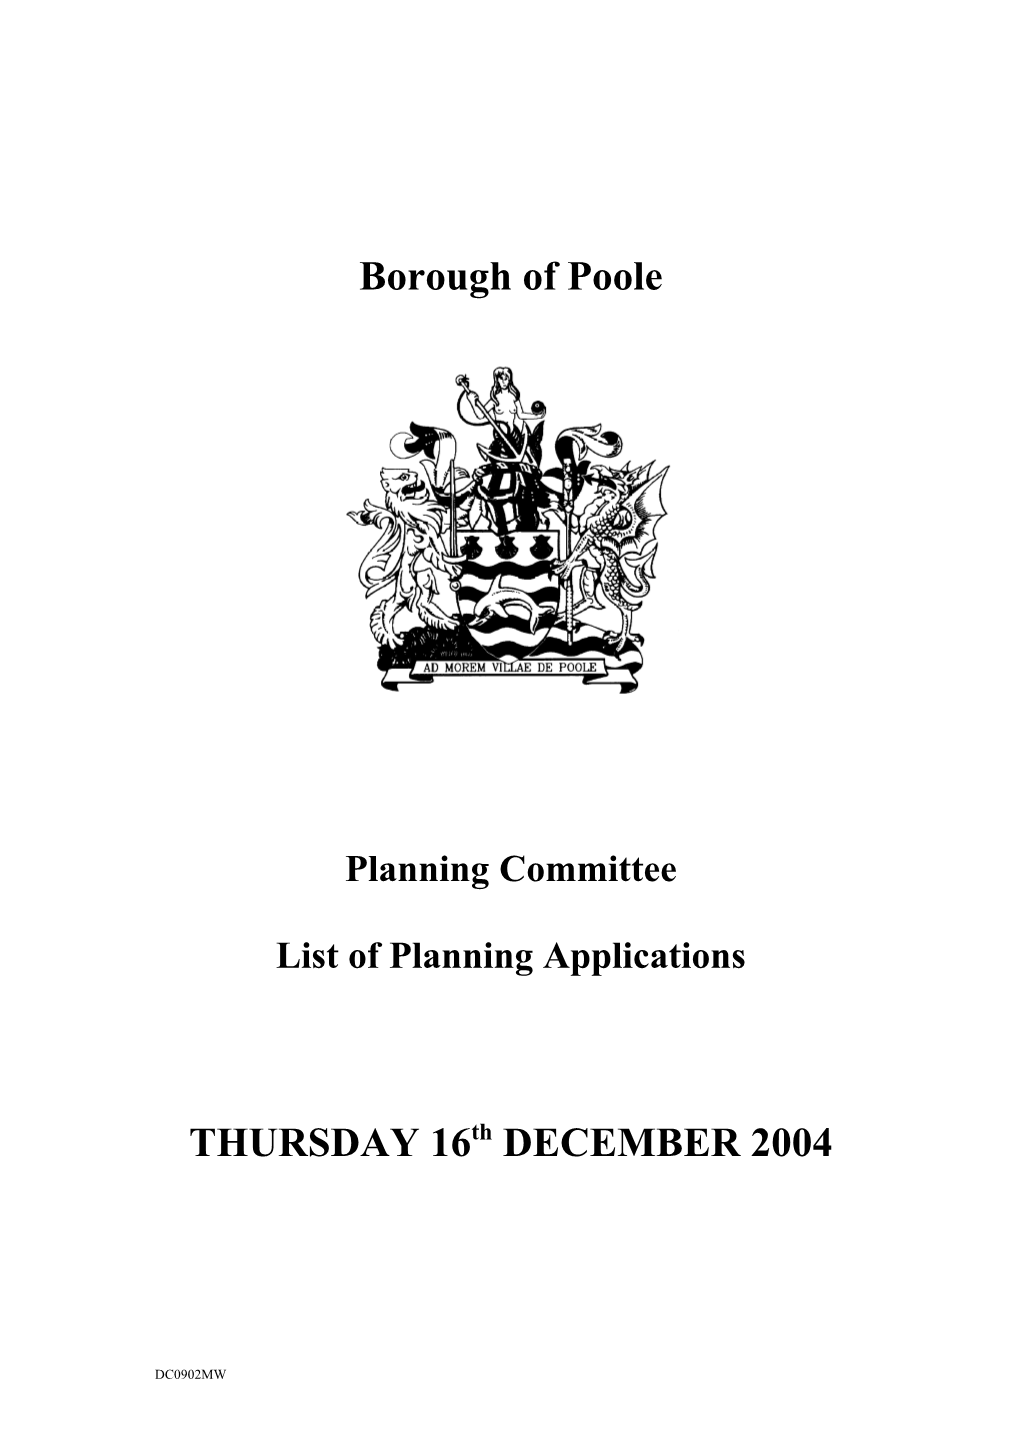 Final Plans List - 16 December 2004